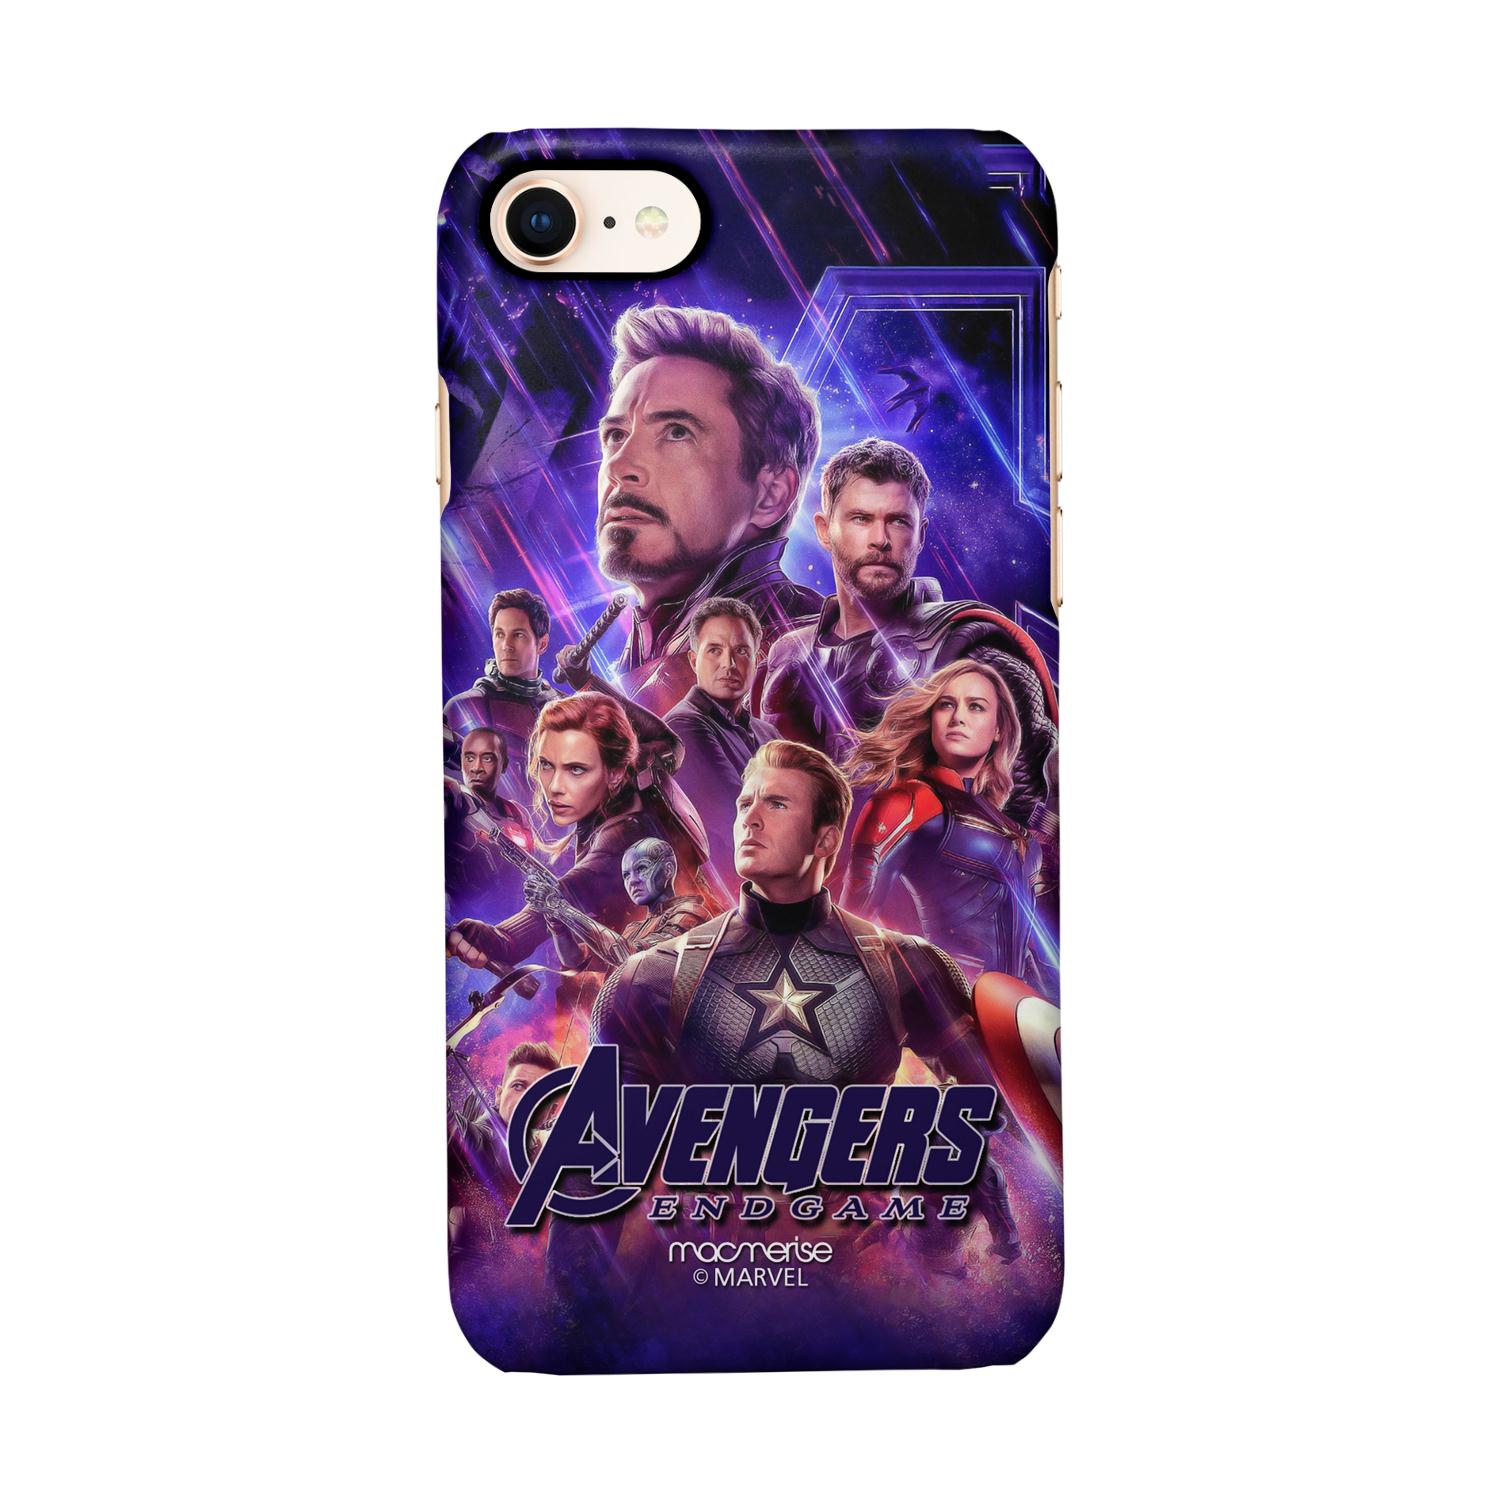 Buy Avengers Endgame Poster - Sleek Phone Case for iPhone 7 Online